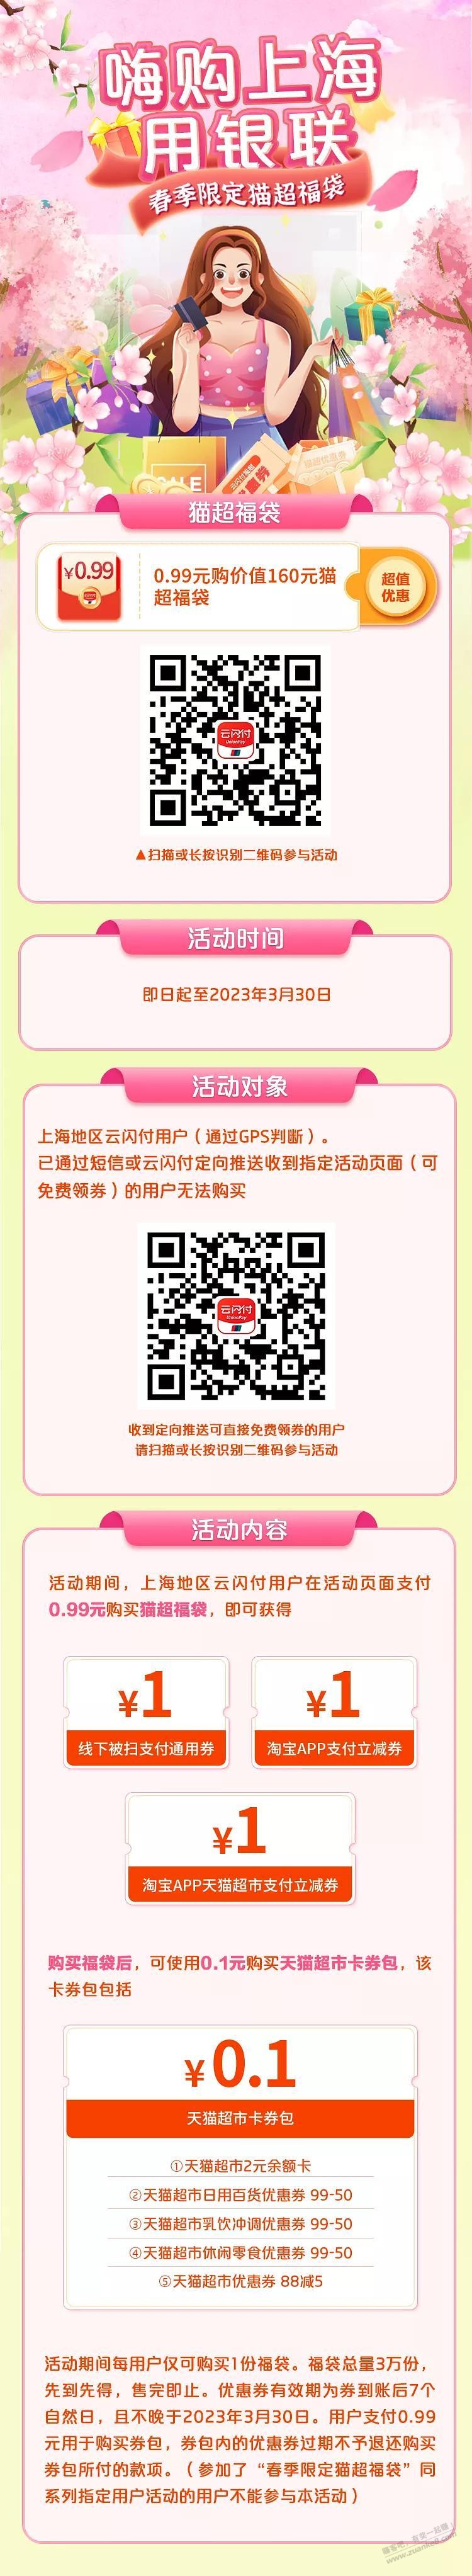 （上海地区）云闪付3张1元券+2元猫超卡-惠小助(52huixz.com)